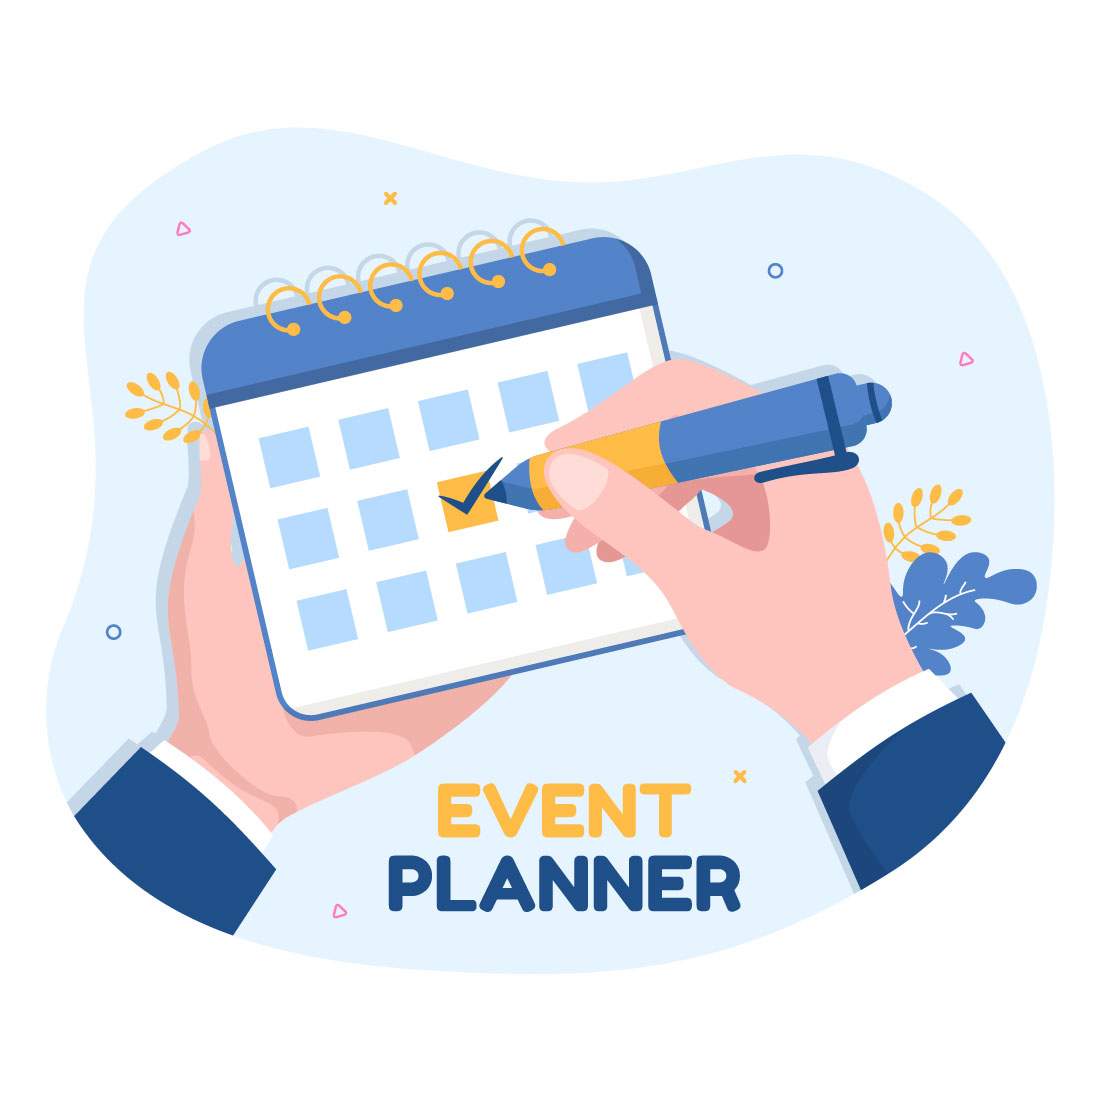 Event Planner Design Flat Illustration cover image.